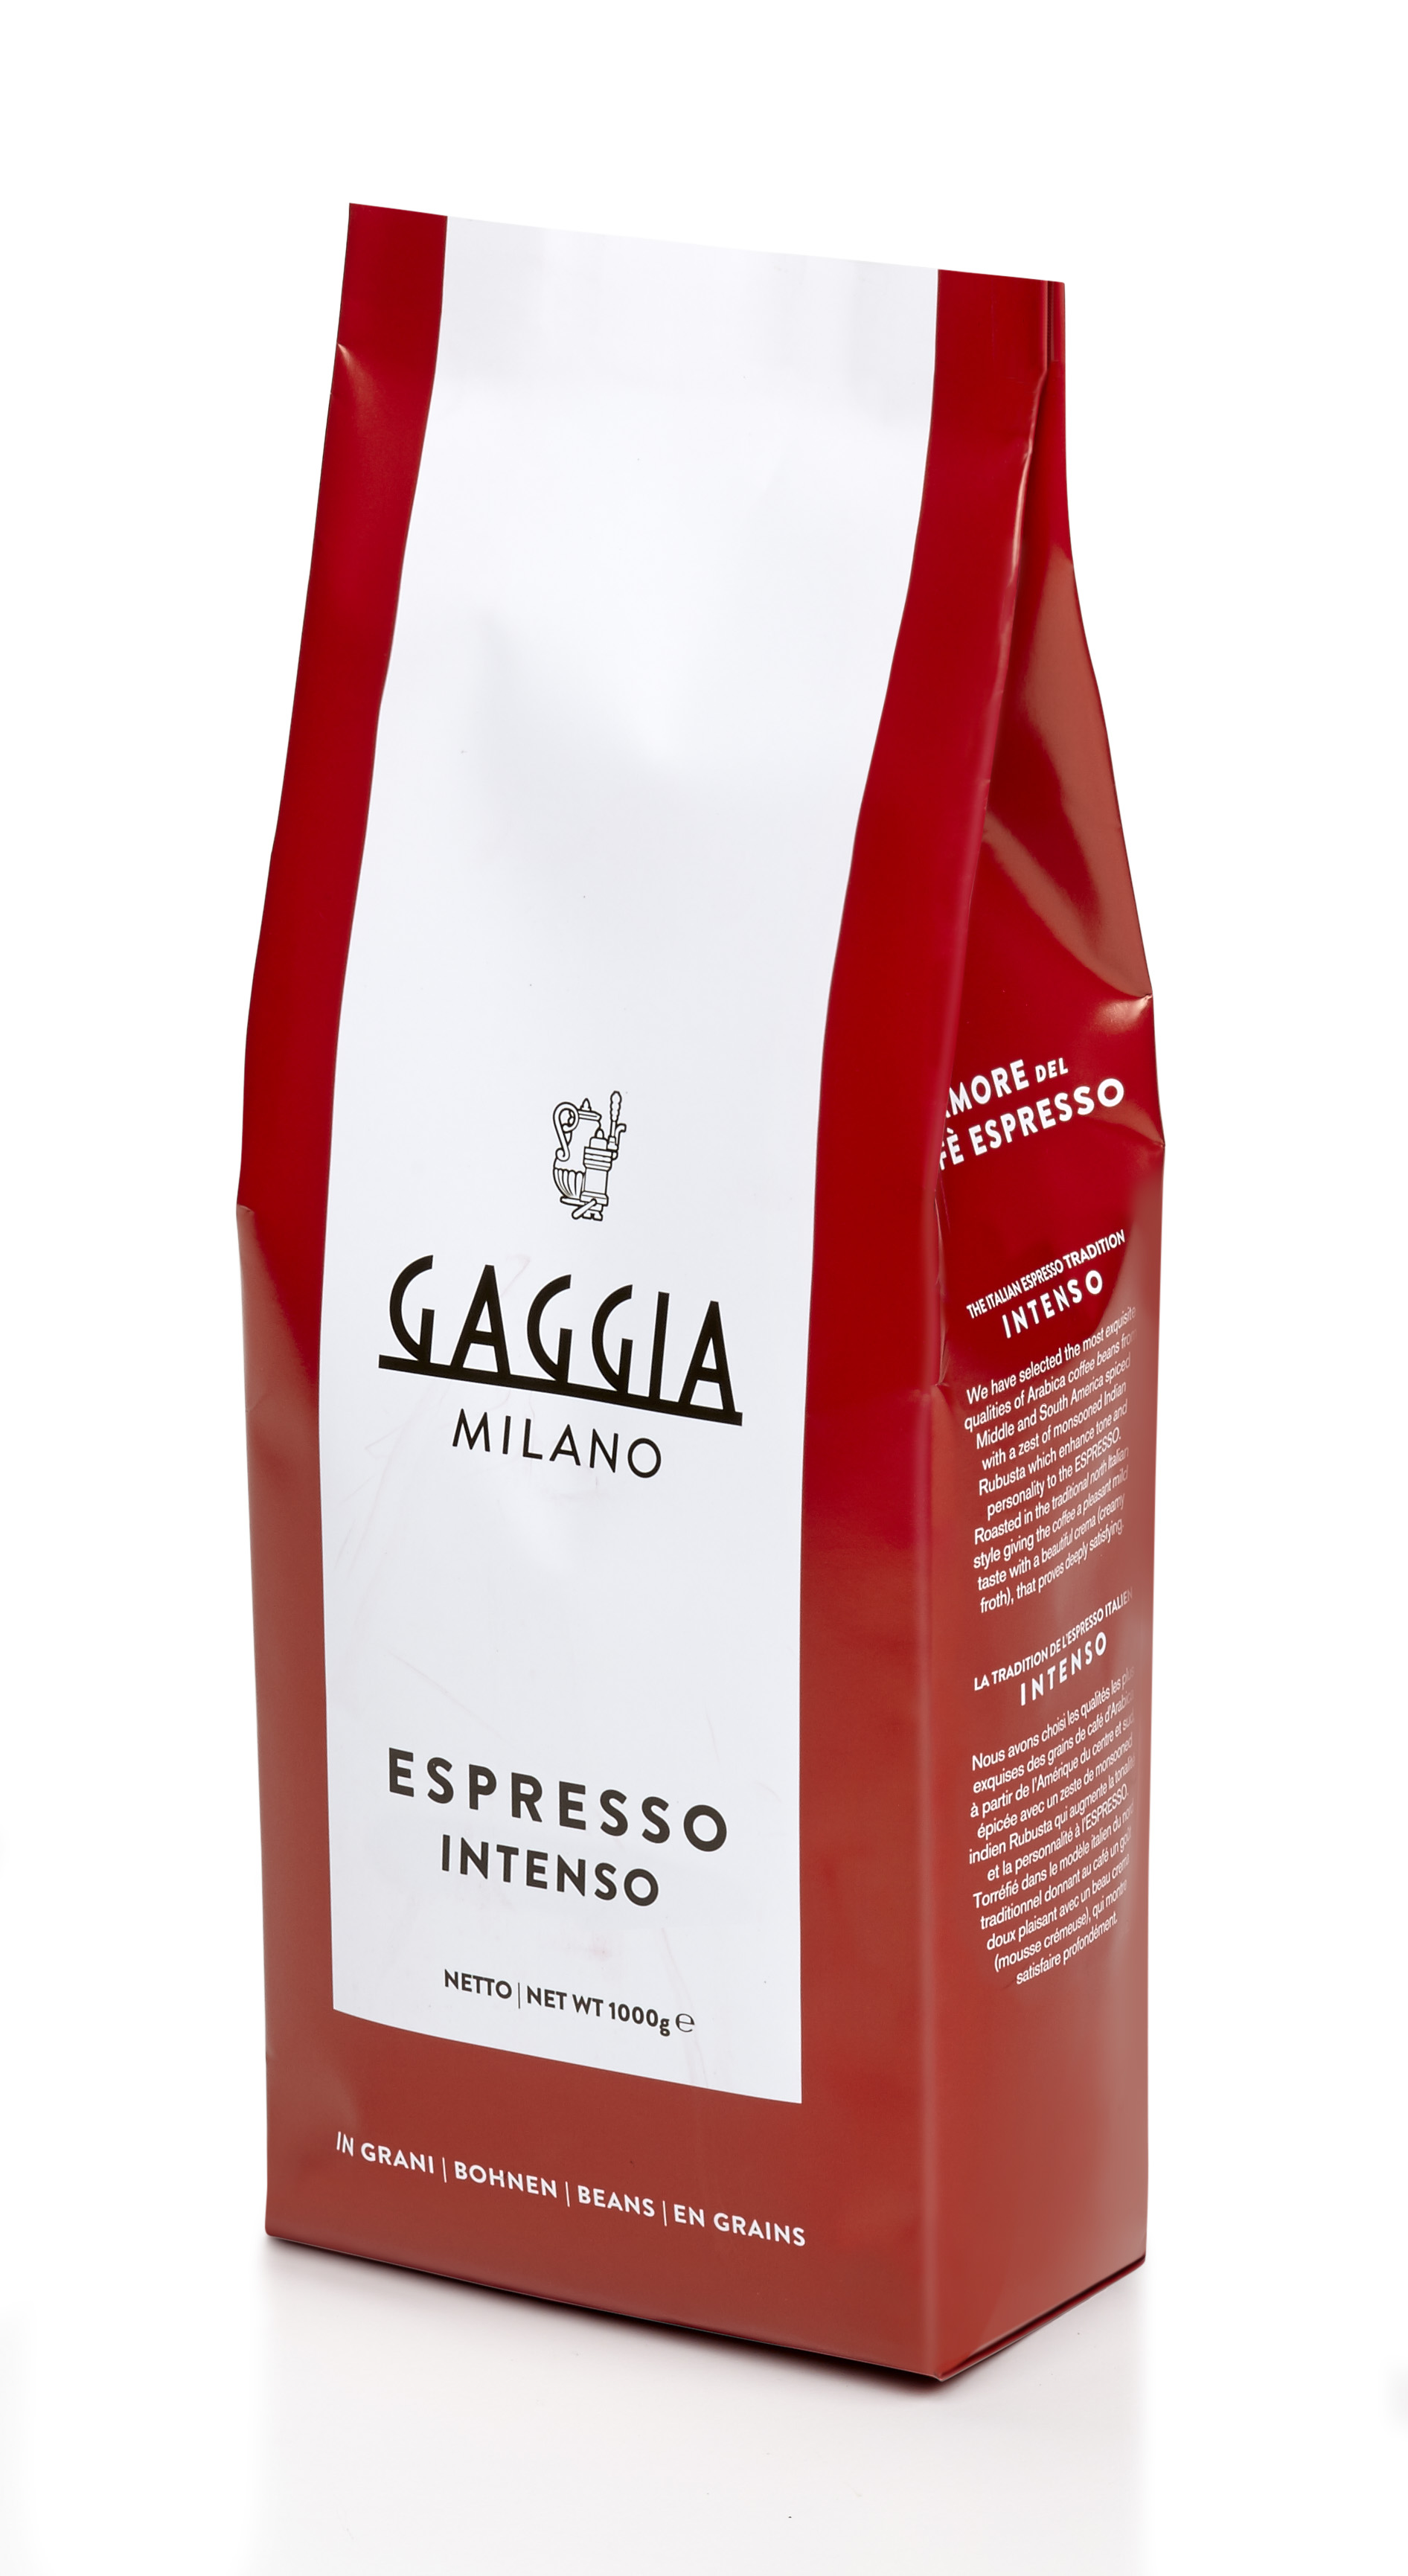 Gaggia Espresso Intenso Kaffee 1kg